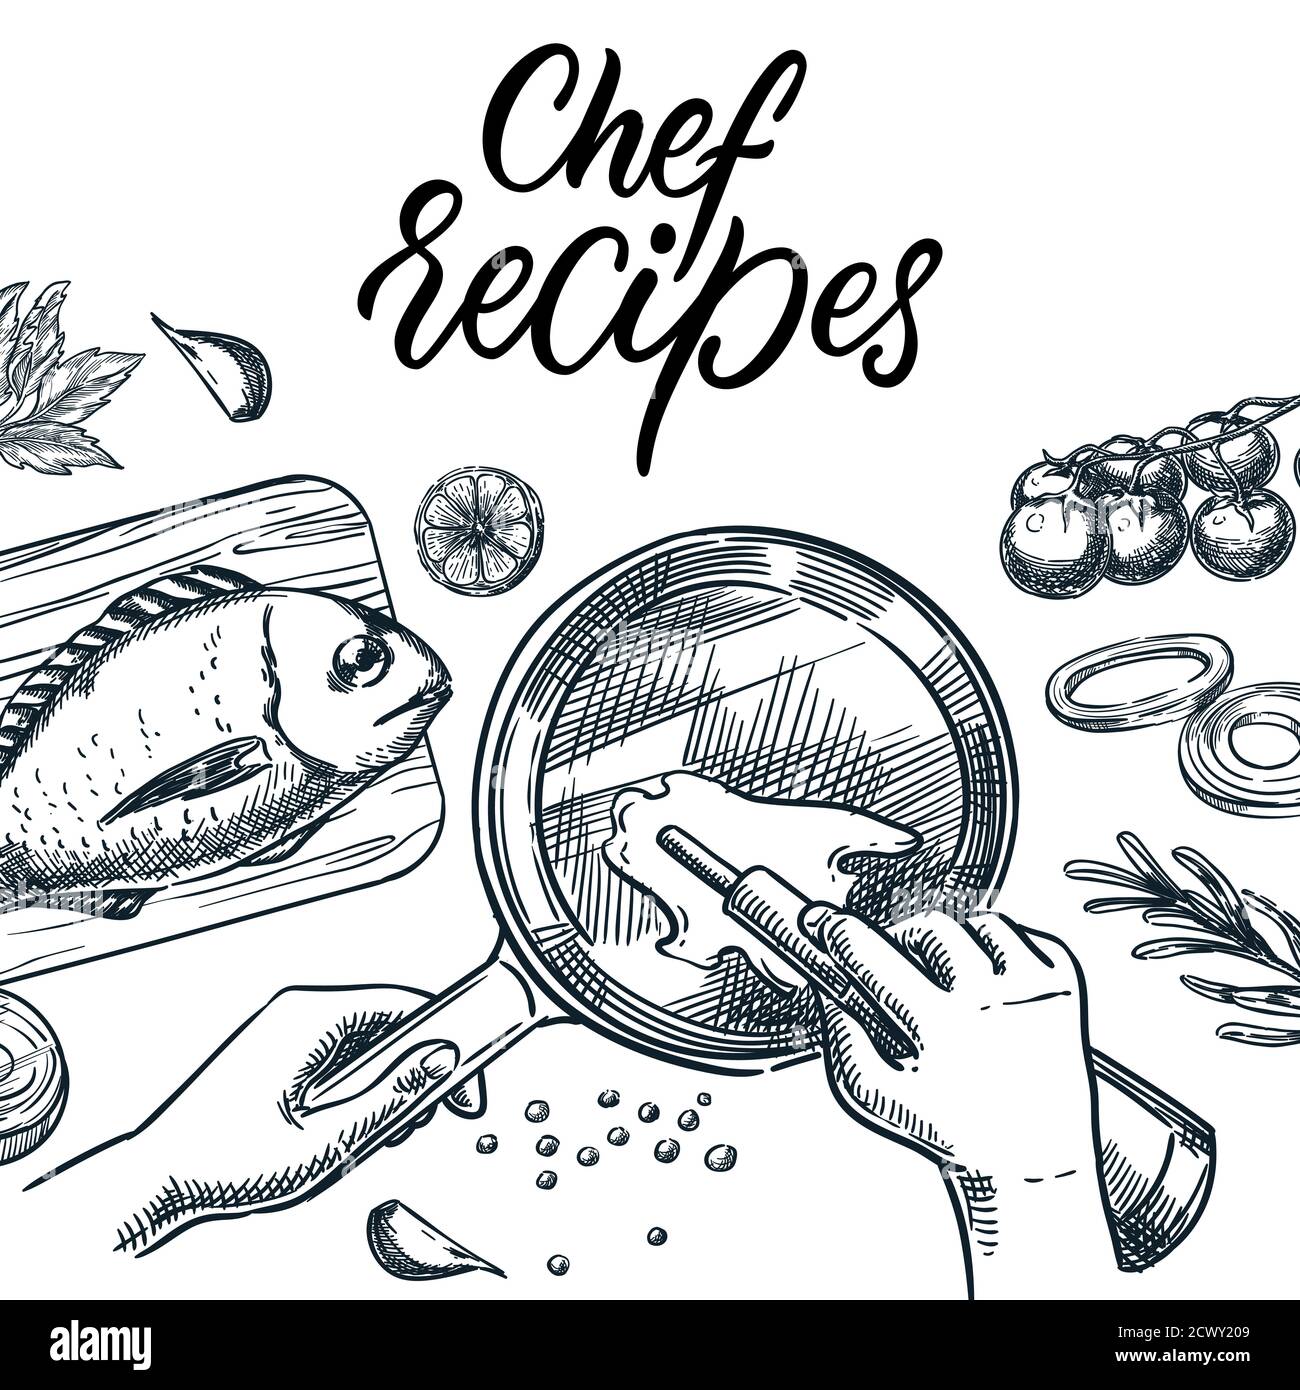 Kochen Thunfisch oder dorado Fisch. Gesunde Mahlzeit Zubereitung Prozess Vektor Skizze Illustration. Menschliche Hände, die Olivenöl in die Bratpfanne gießen. Rezepte des Küchenchefs Stock Vektor